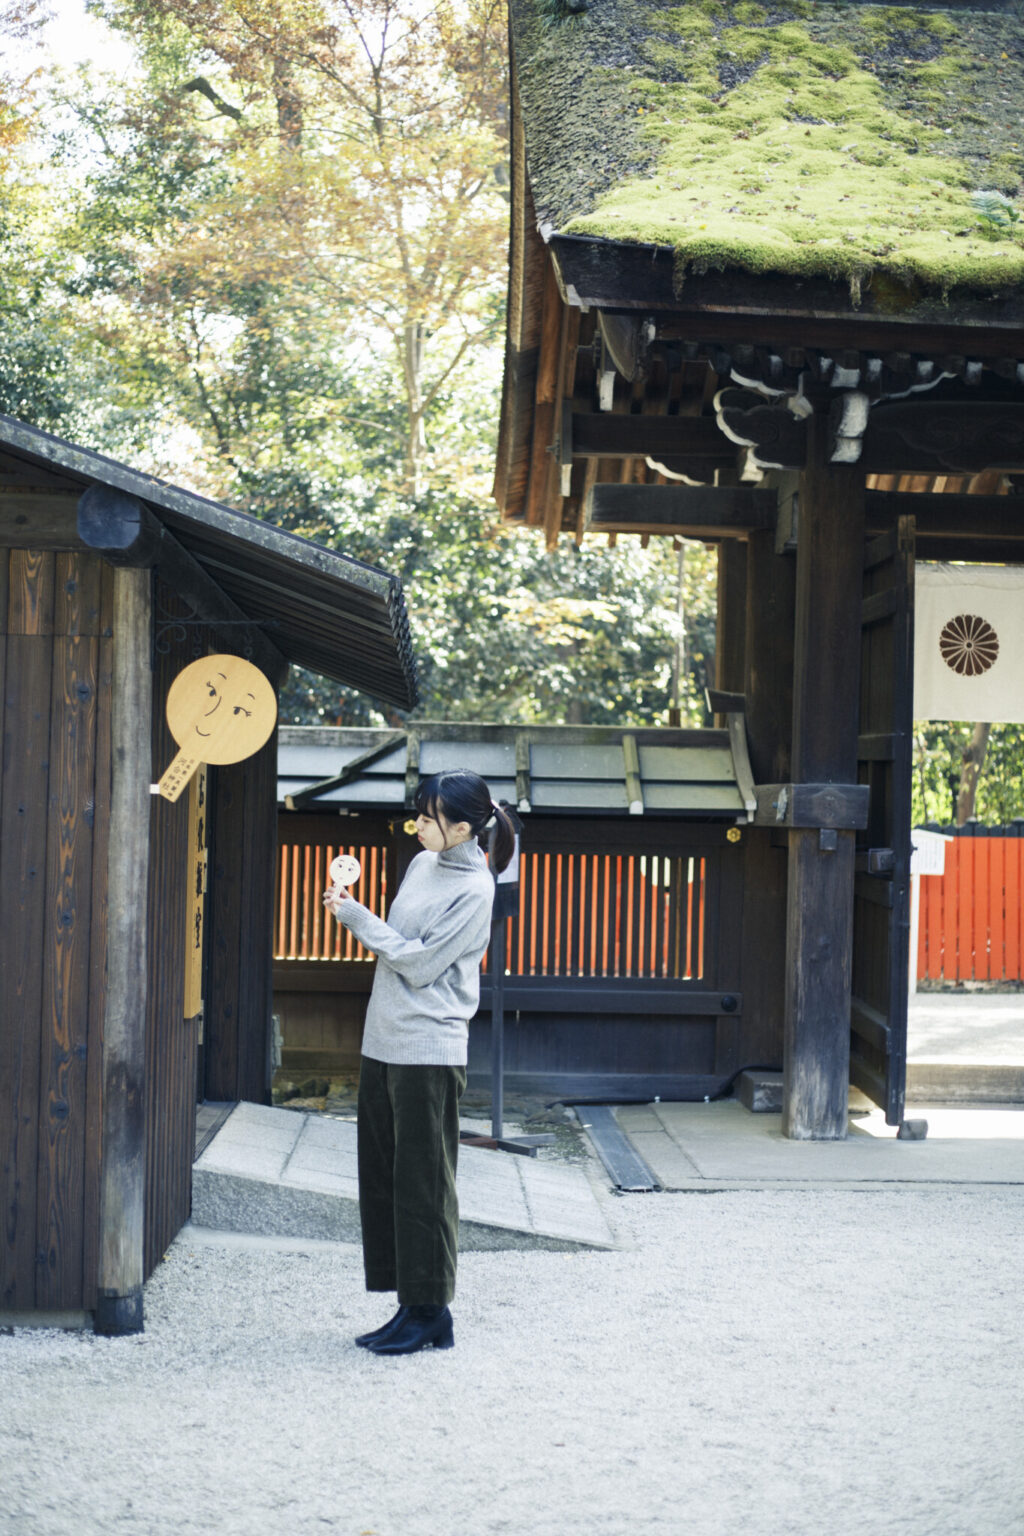 下鴨神社の摂社・河合神社は美人祈願の聖地。理想の顔を描いた鏡絵馬を奉納し、祭壇前の鏡に自分の姿を映して美麗を願う。